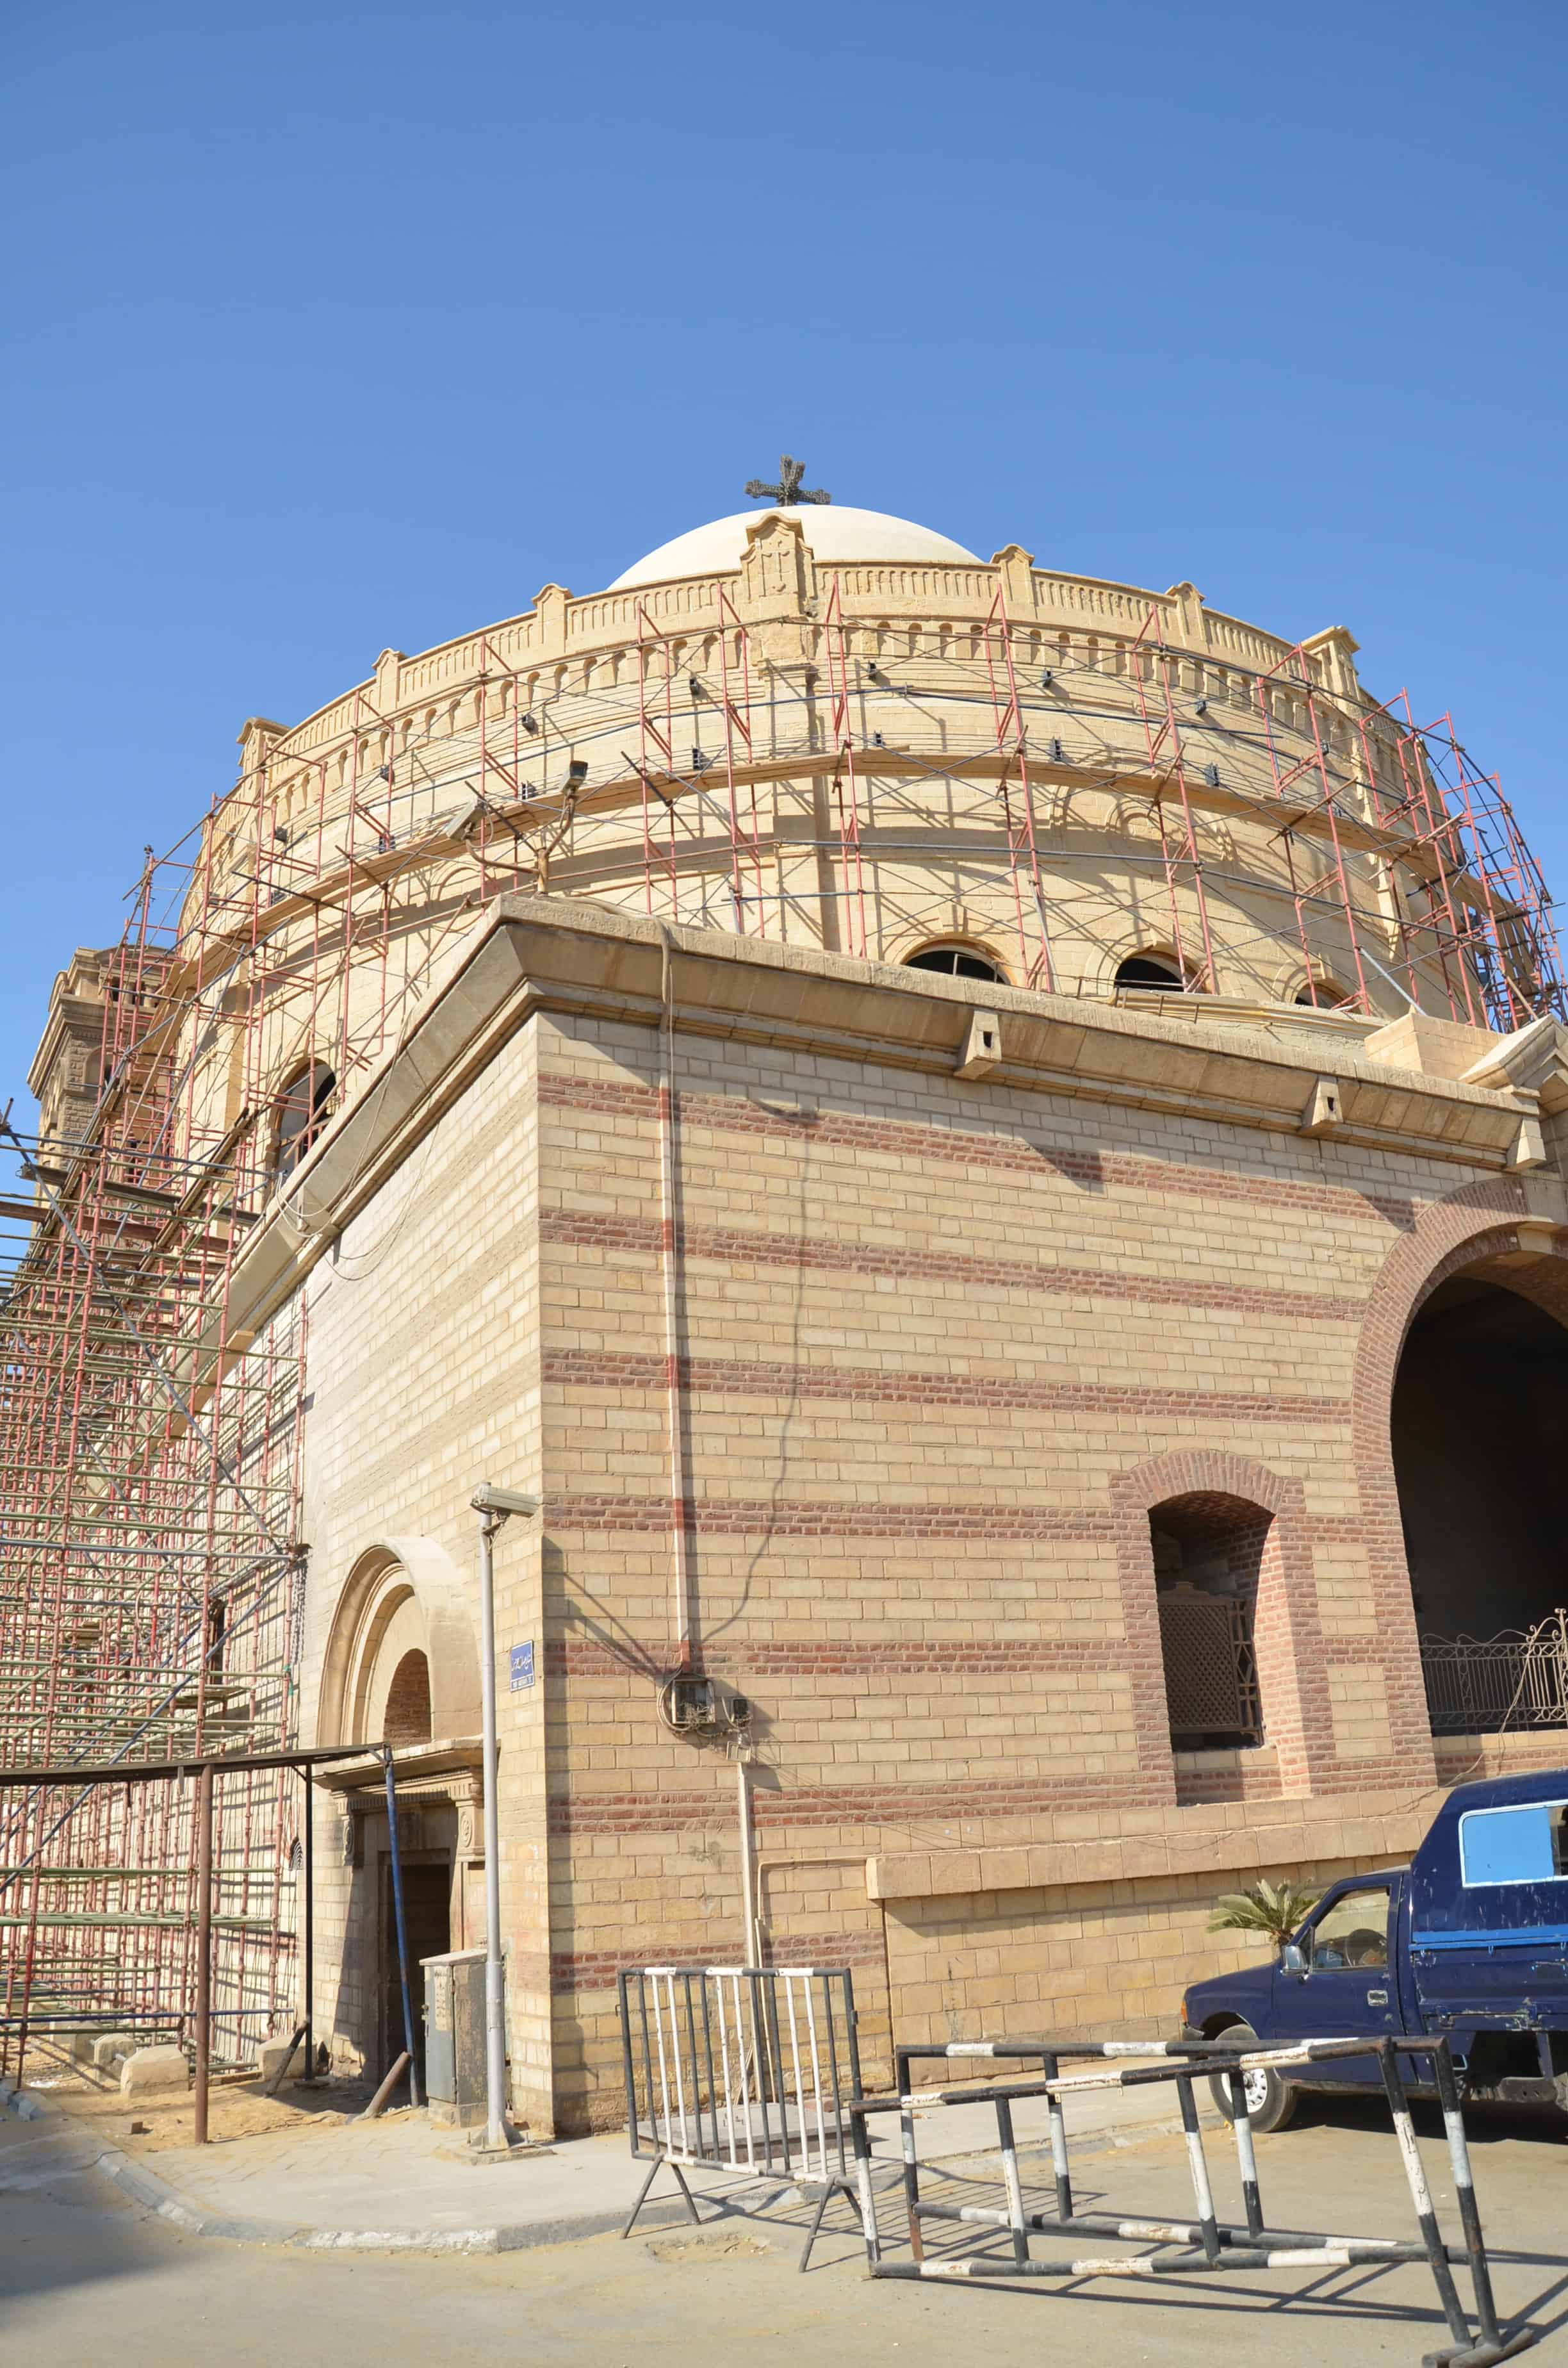 Greek Orthodox Church of St. George in Cairo, Egypt